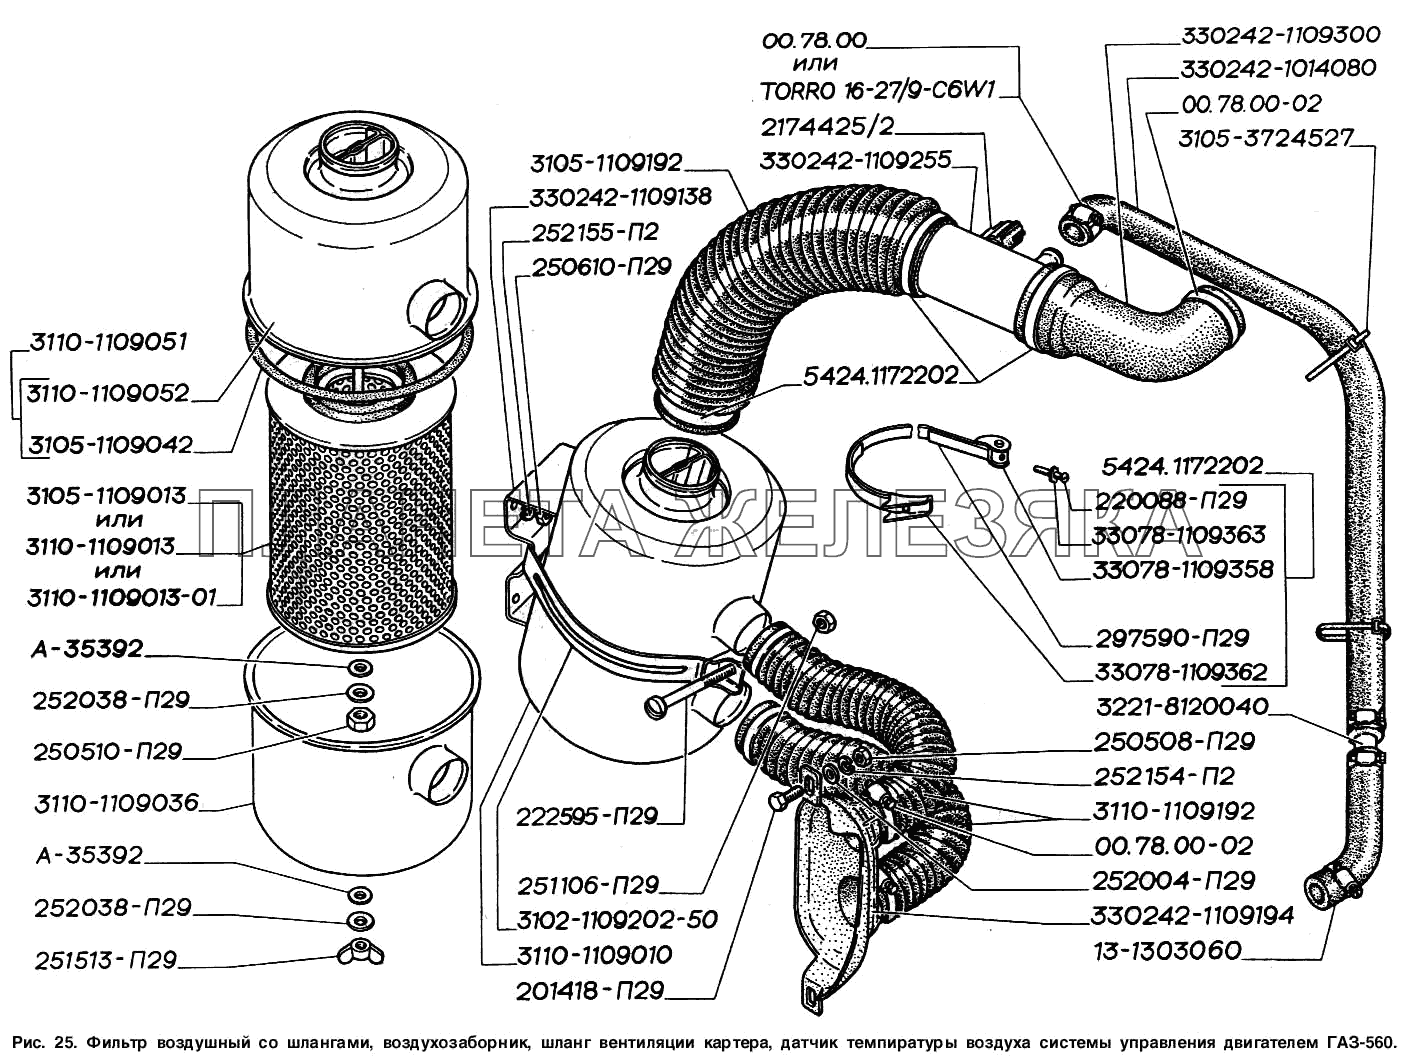 Фильтр воздушный со шлангами, воздухозаборник, шланг вентиляции картера, датчик температуры воздуха системы управления двигателем ГАЗ-560 ГАЗ-2217 (Соболь)